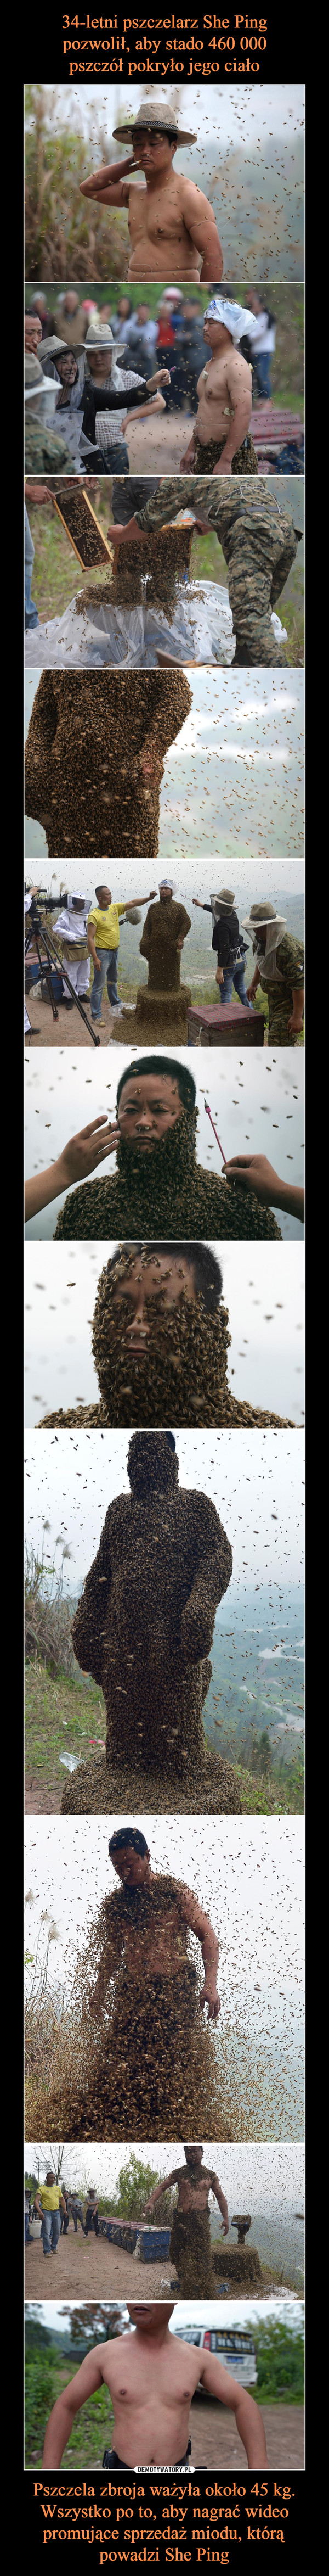 34-letni pszczelarz She Ping
pozwolił, aby stado 460 000
pszczół pokryło jego ciało Pszczela zbroja ważyła około 45 kg. Wszystko po to, aby nagrać wideo promujące sprzedaż miodu, którą powadzi She Ping